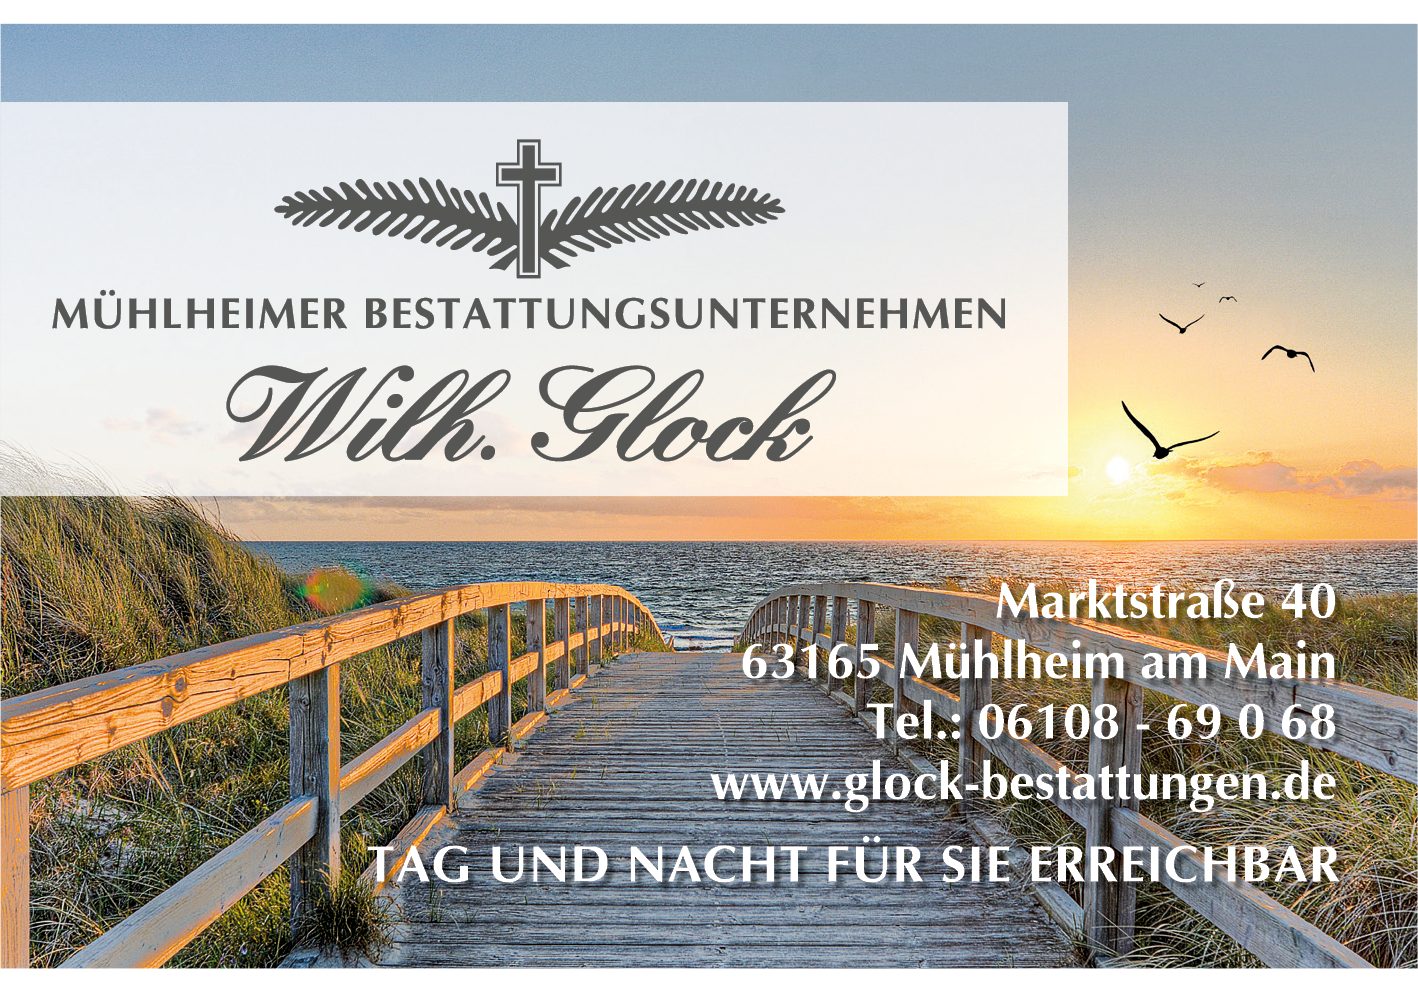 Mühlheimer Bestattungsunternehmen W. Glock